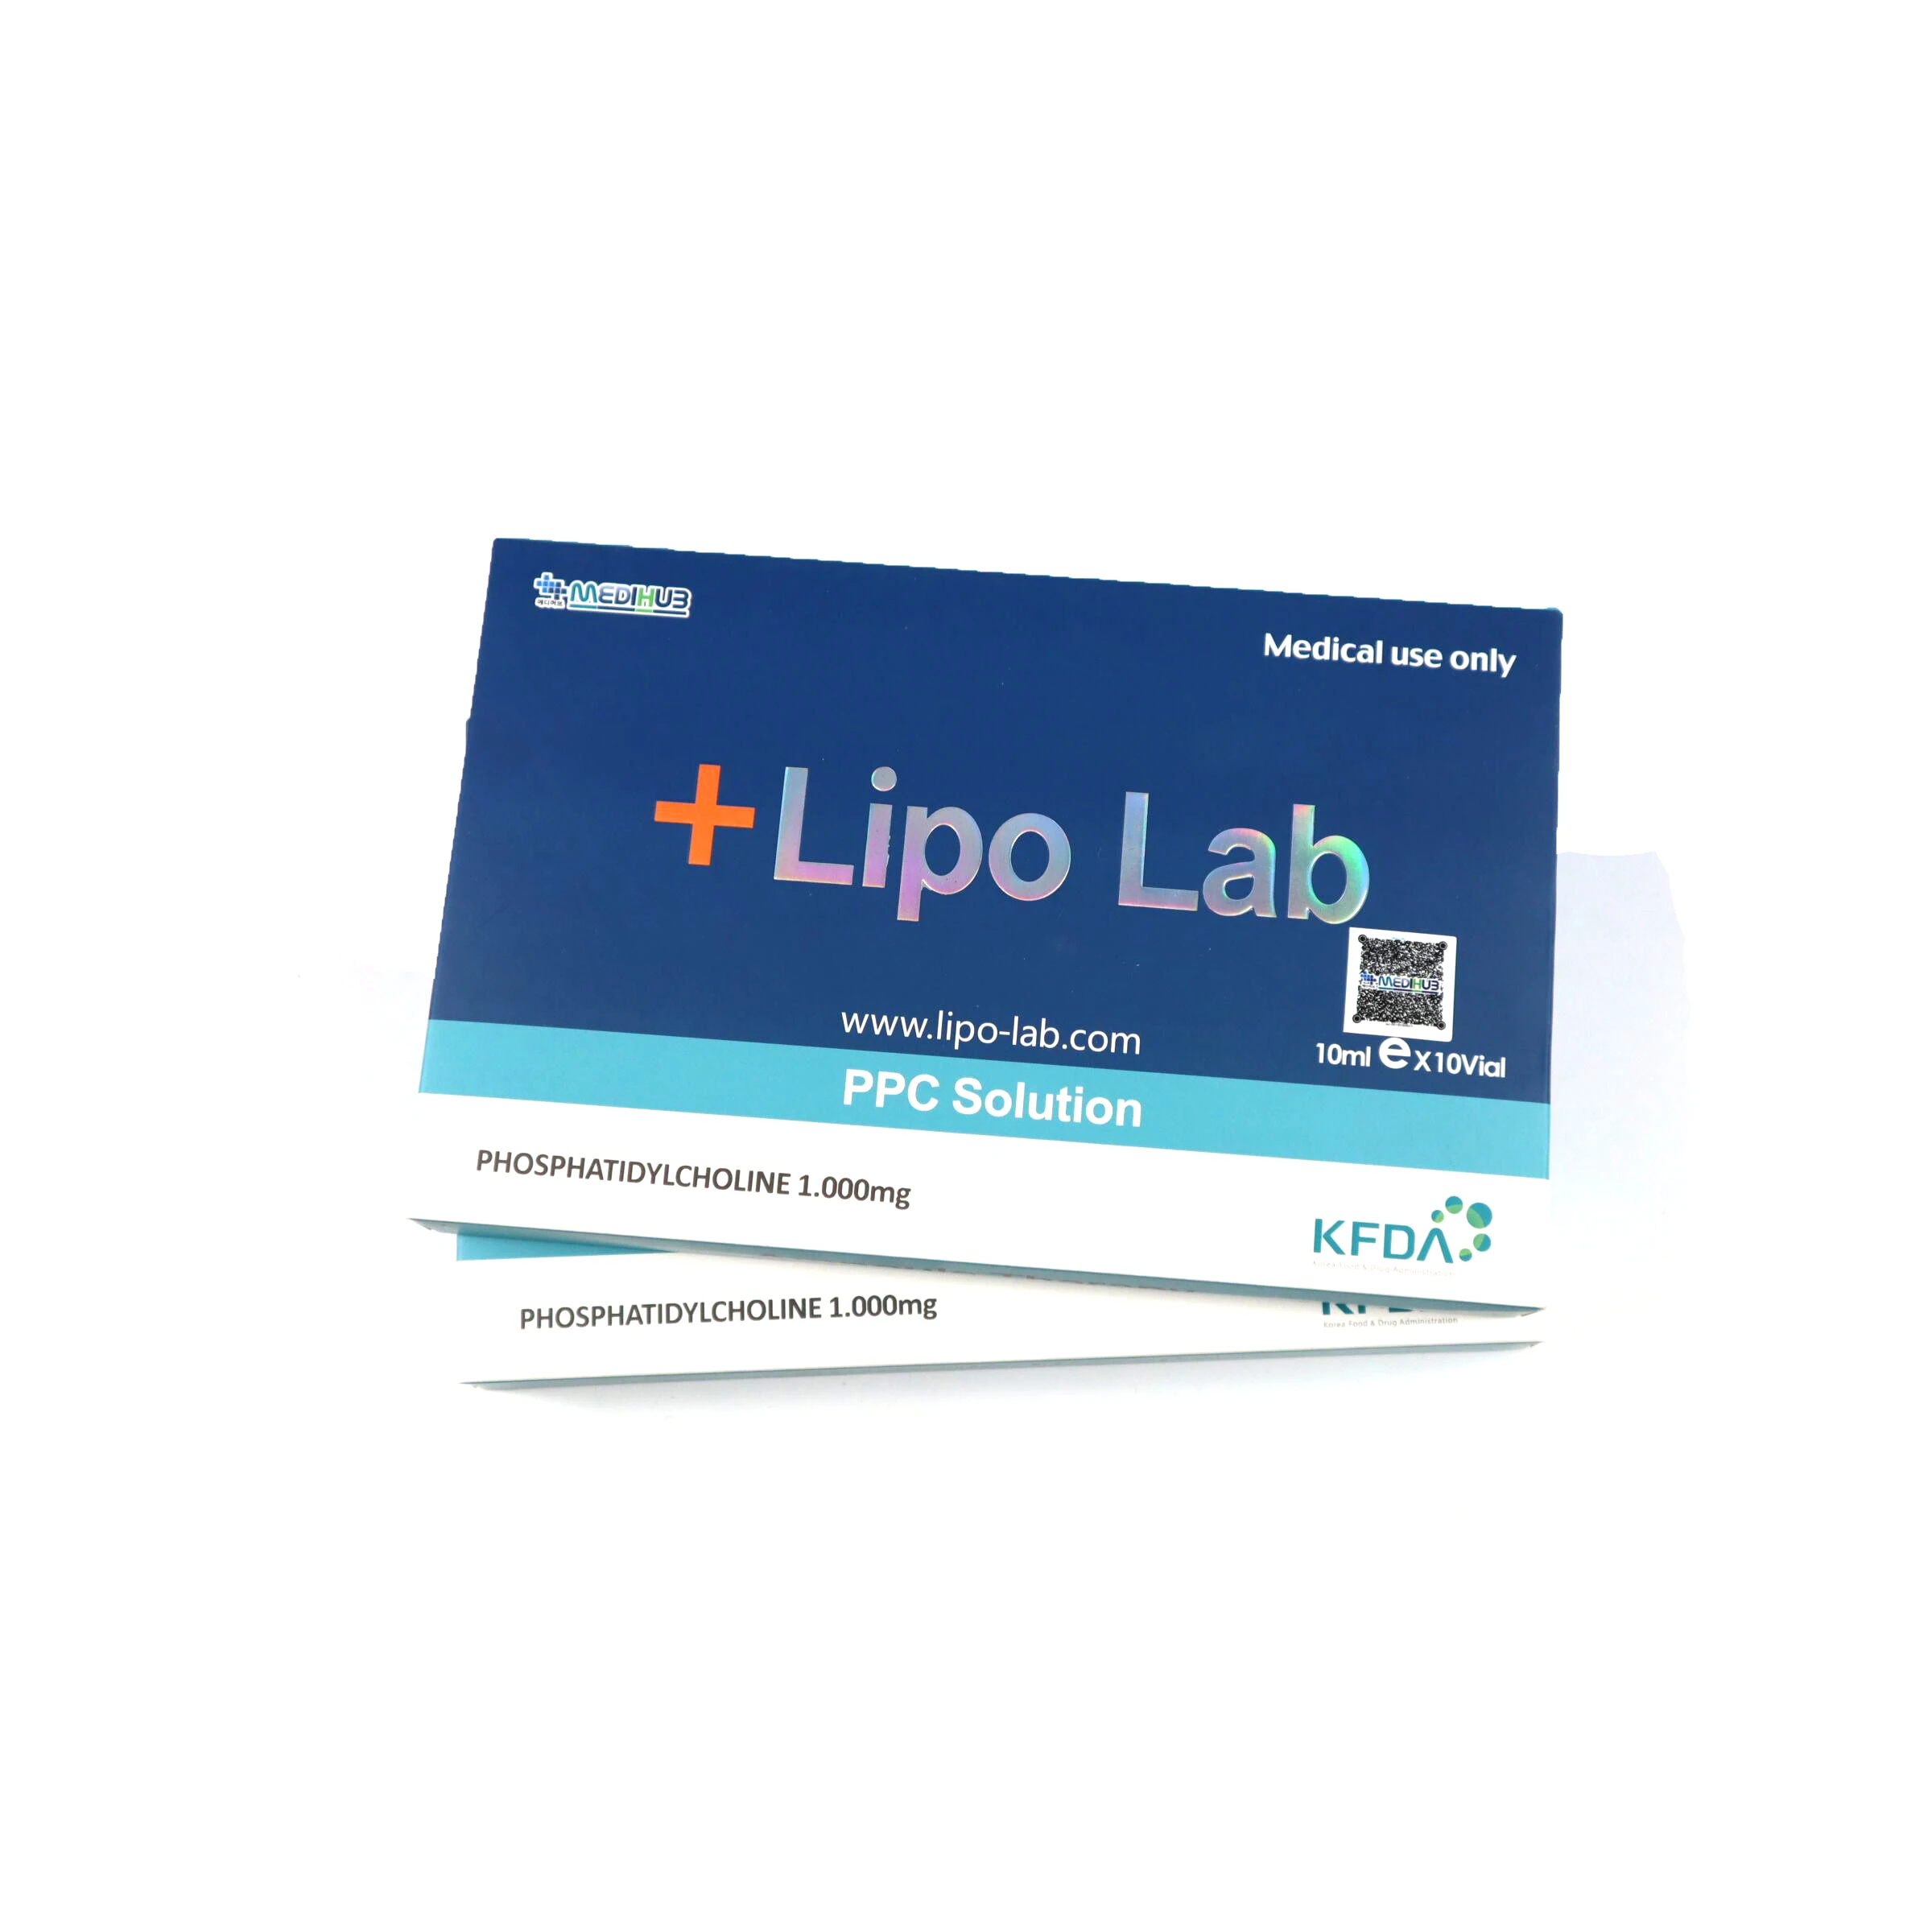 

Lipo Lab Ppc Slimming Solution Fat Dissolving Lipolytic Injection Lipo Lab V Line Lipolysis Injection Lipo Lab, White liquid(lipolab)